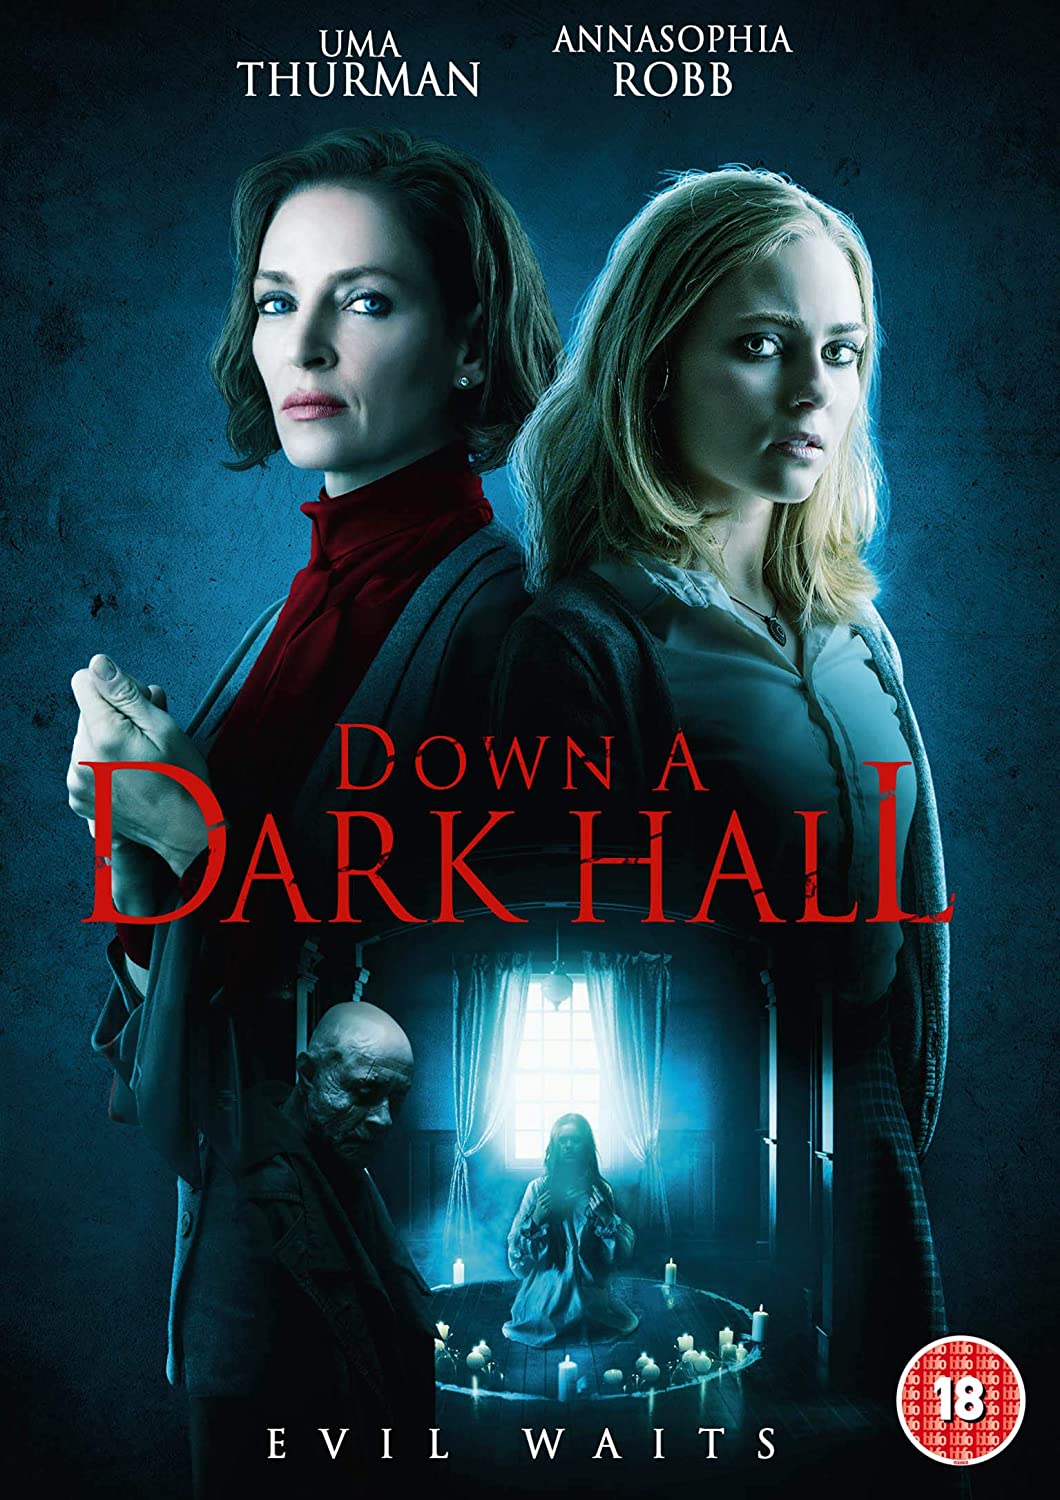 Down A Dark Hall - Horror/Thriller [DVD]